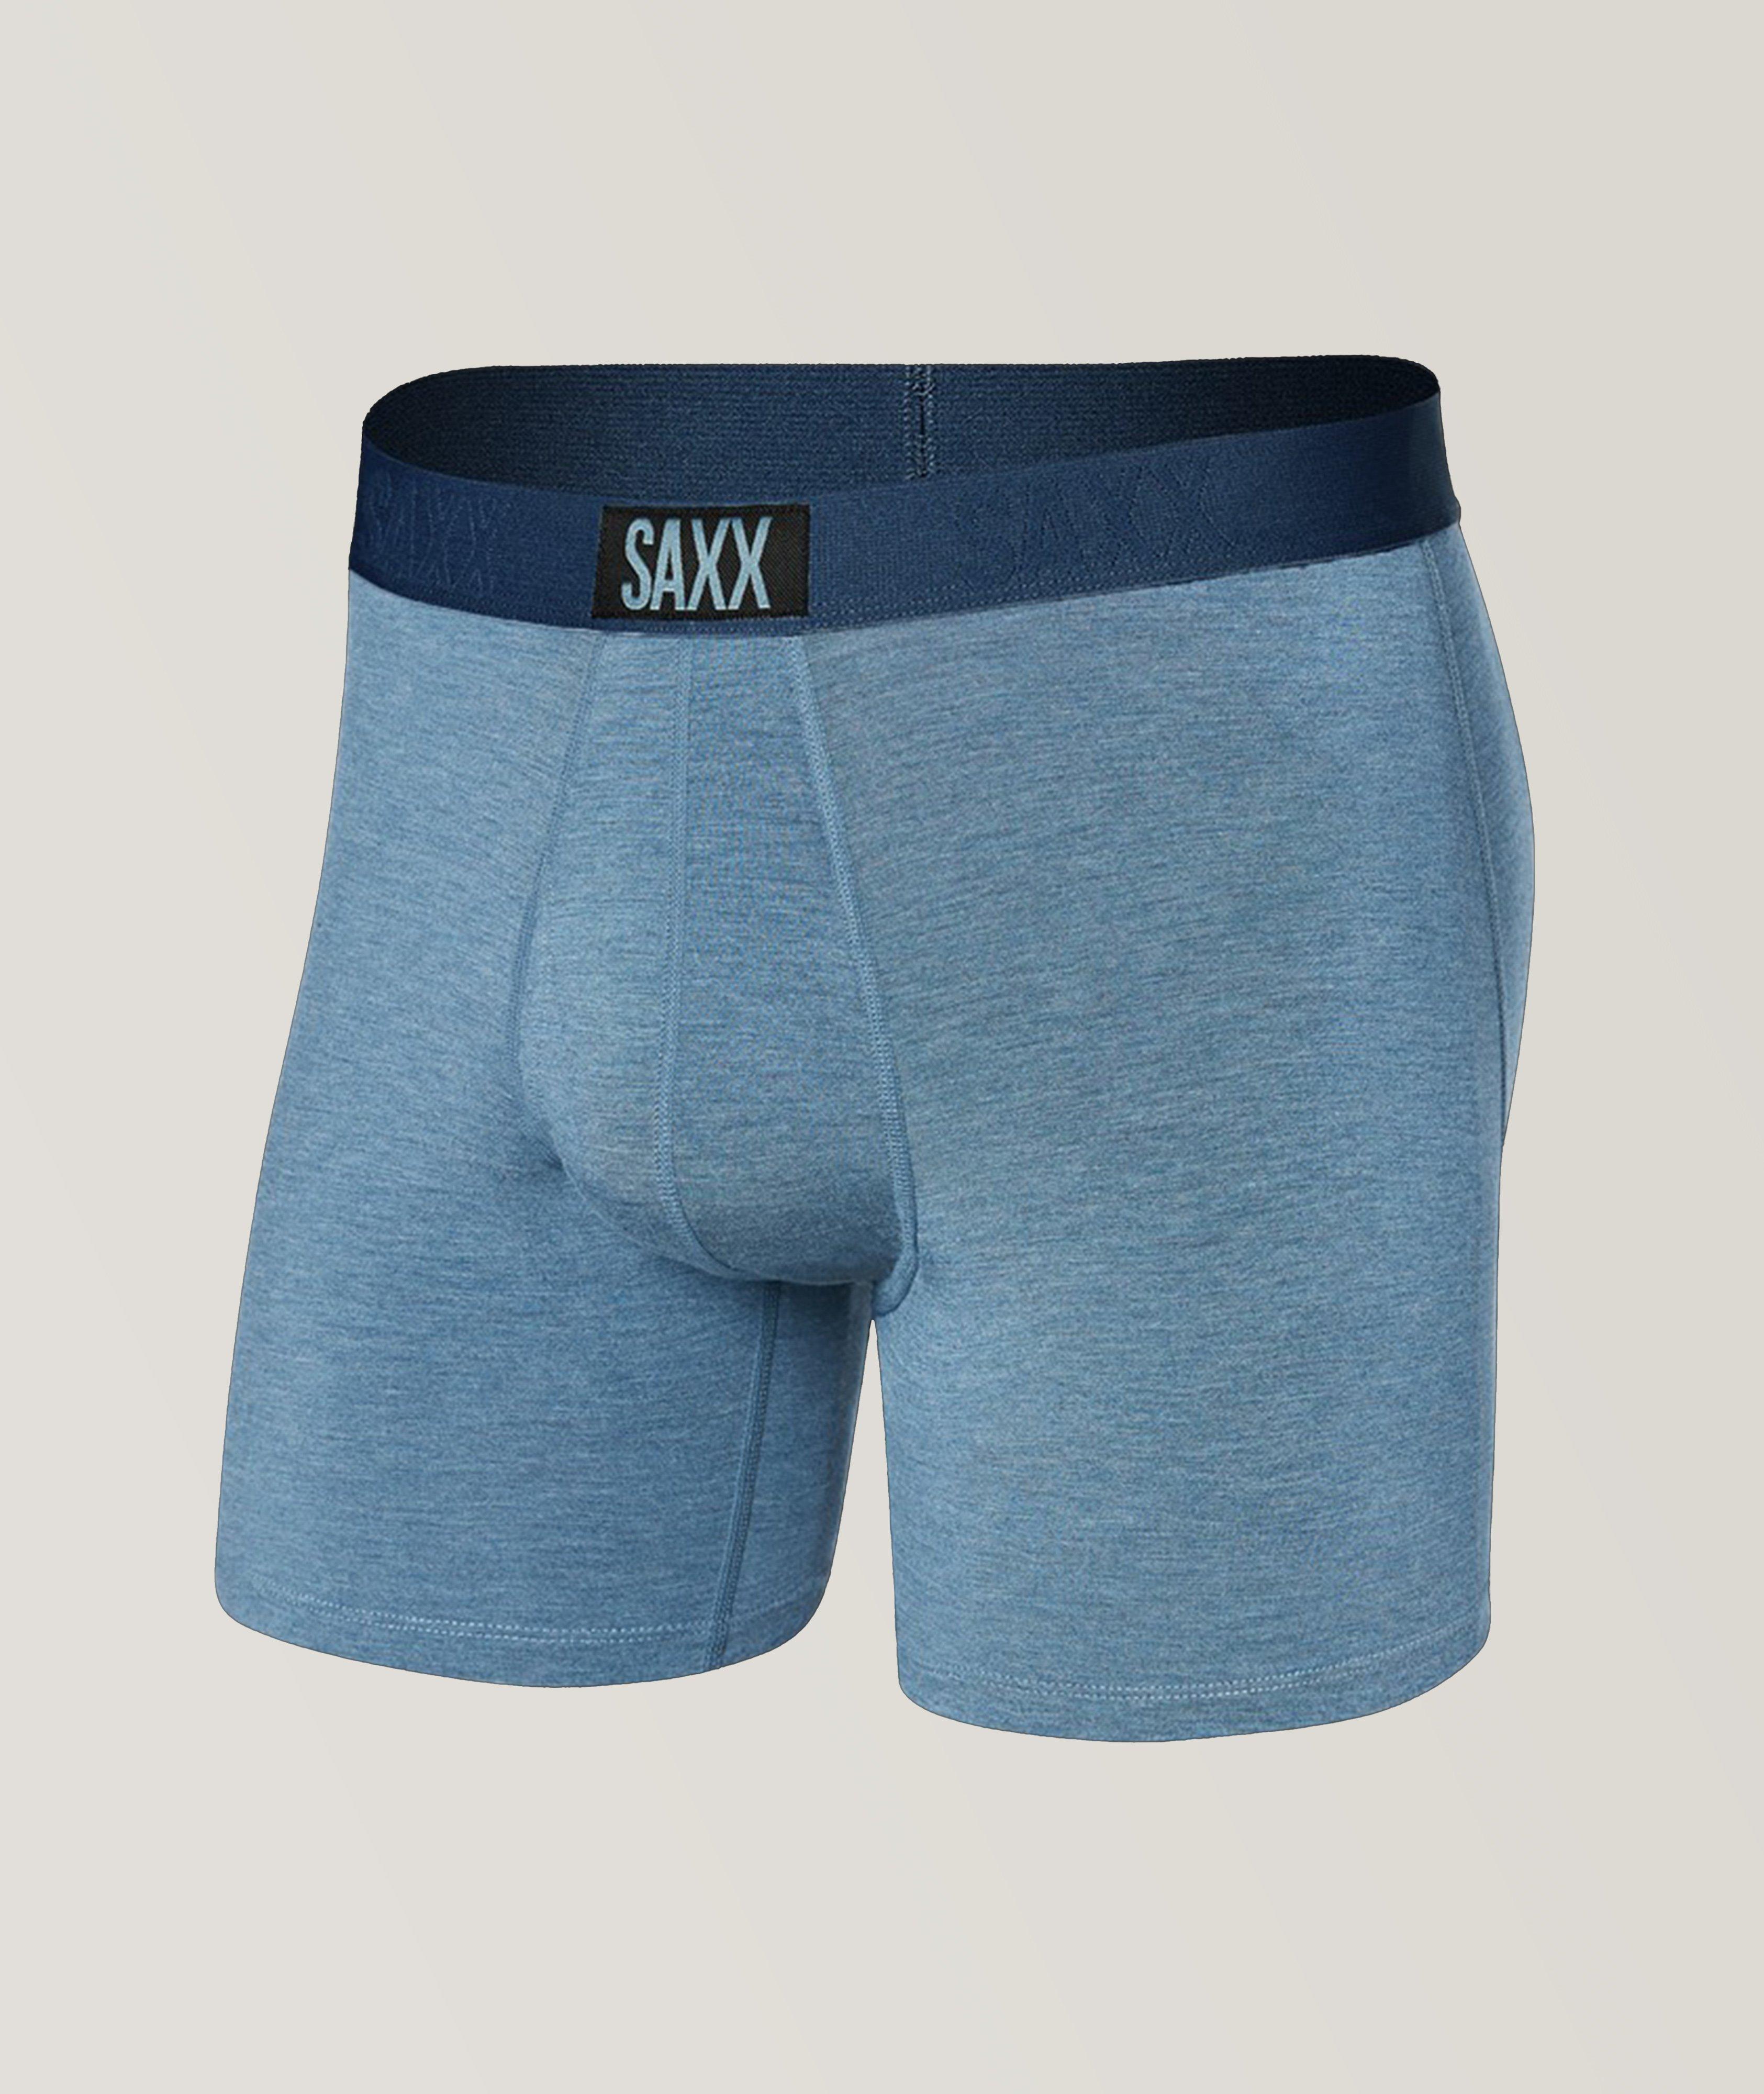 SAXX Vibe Super Soft Heathered Boxer Briefs, Underwear